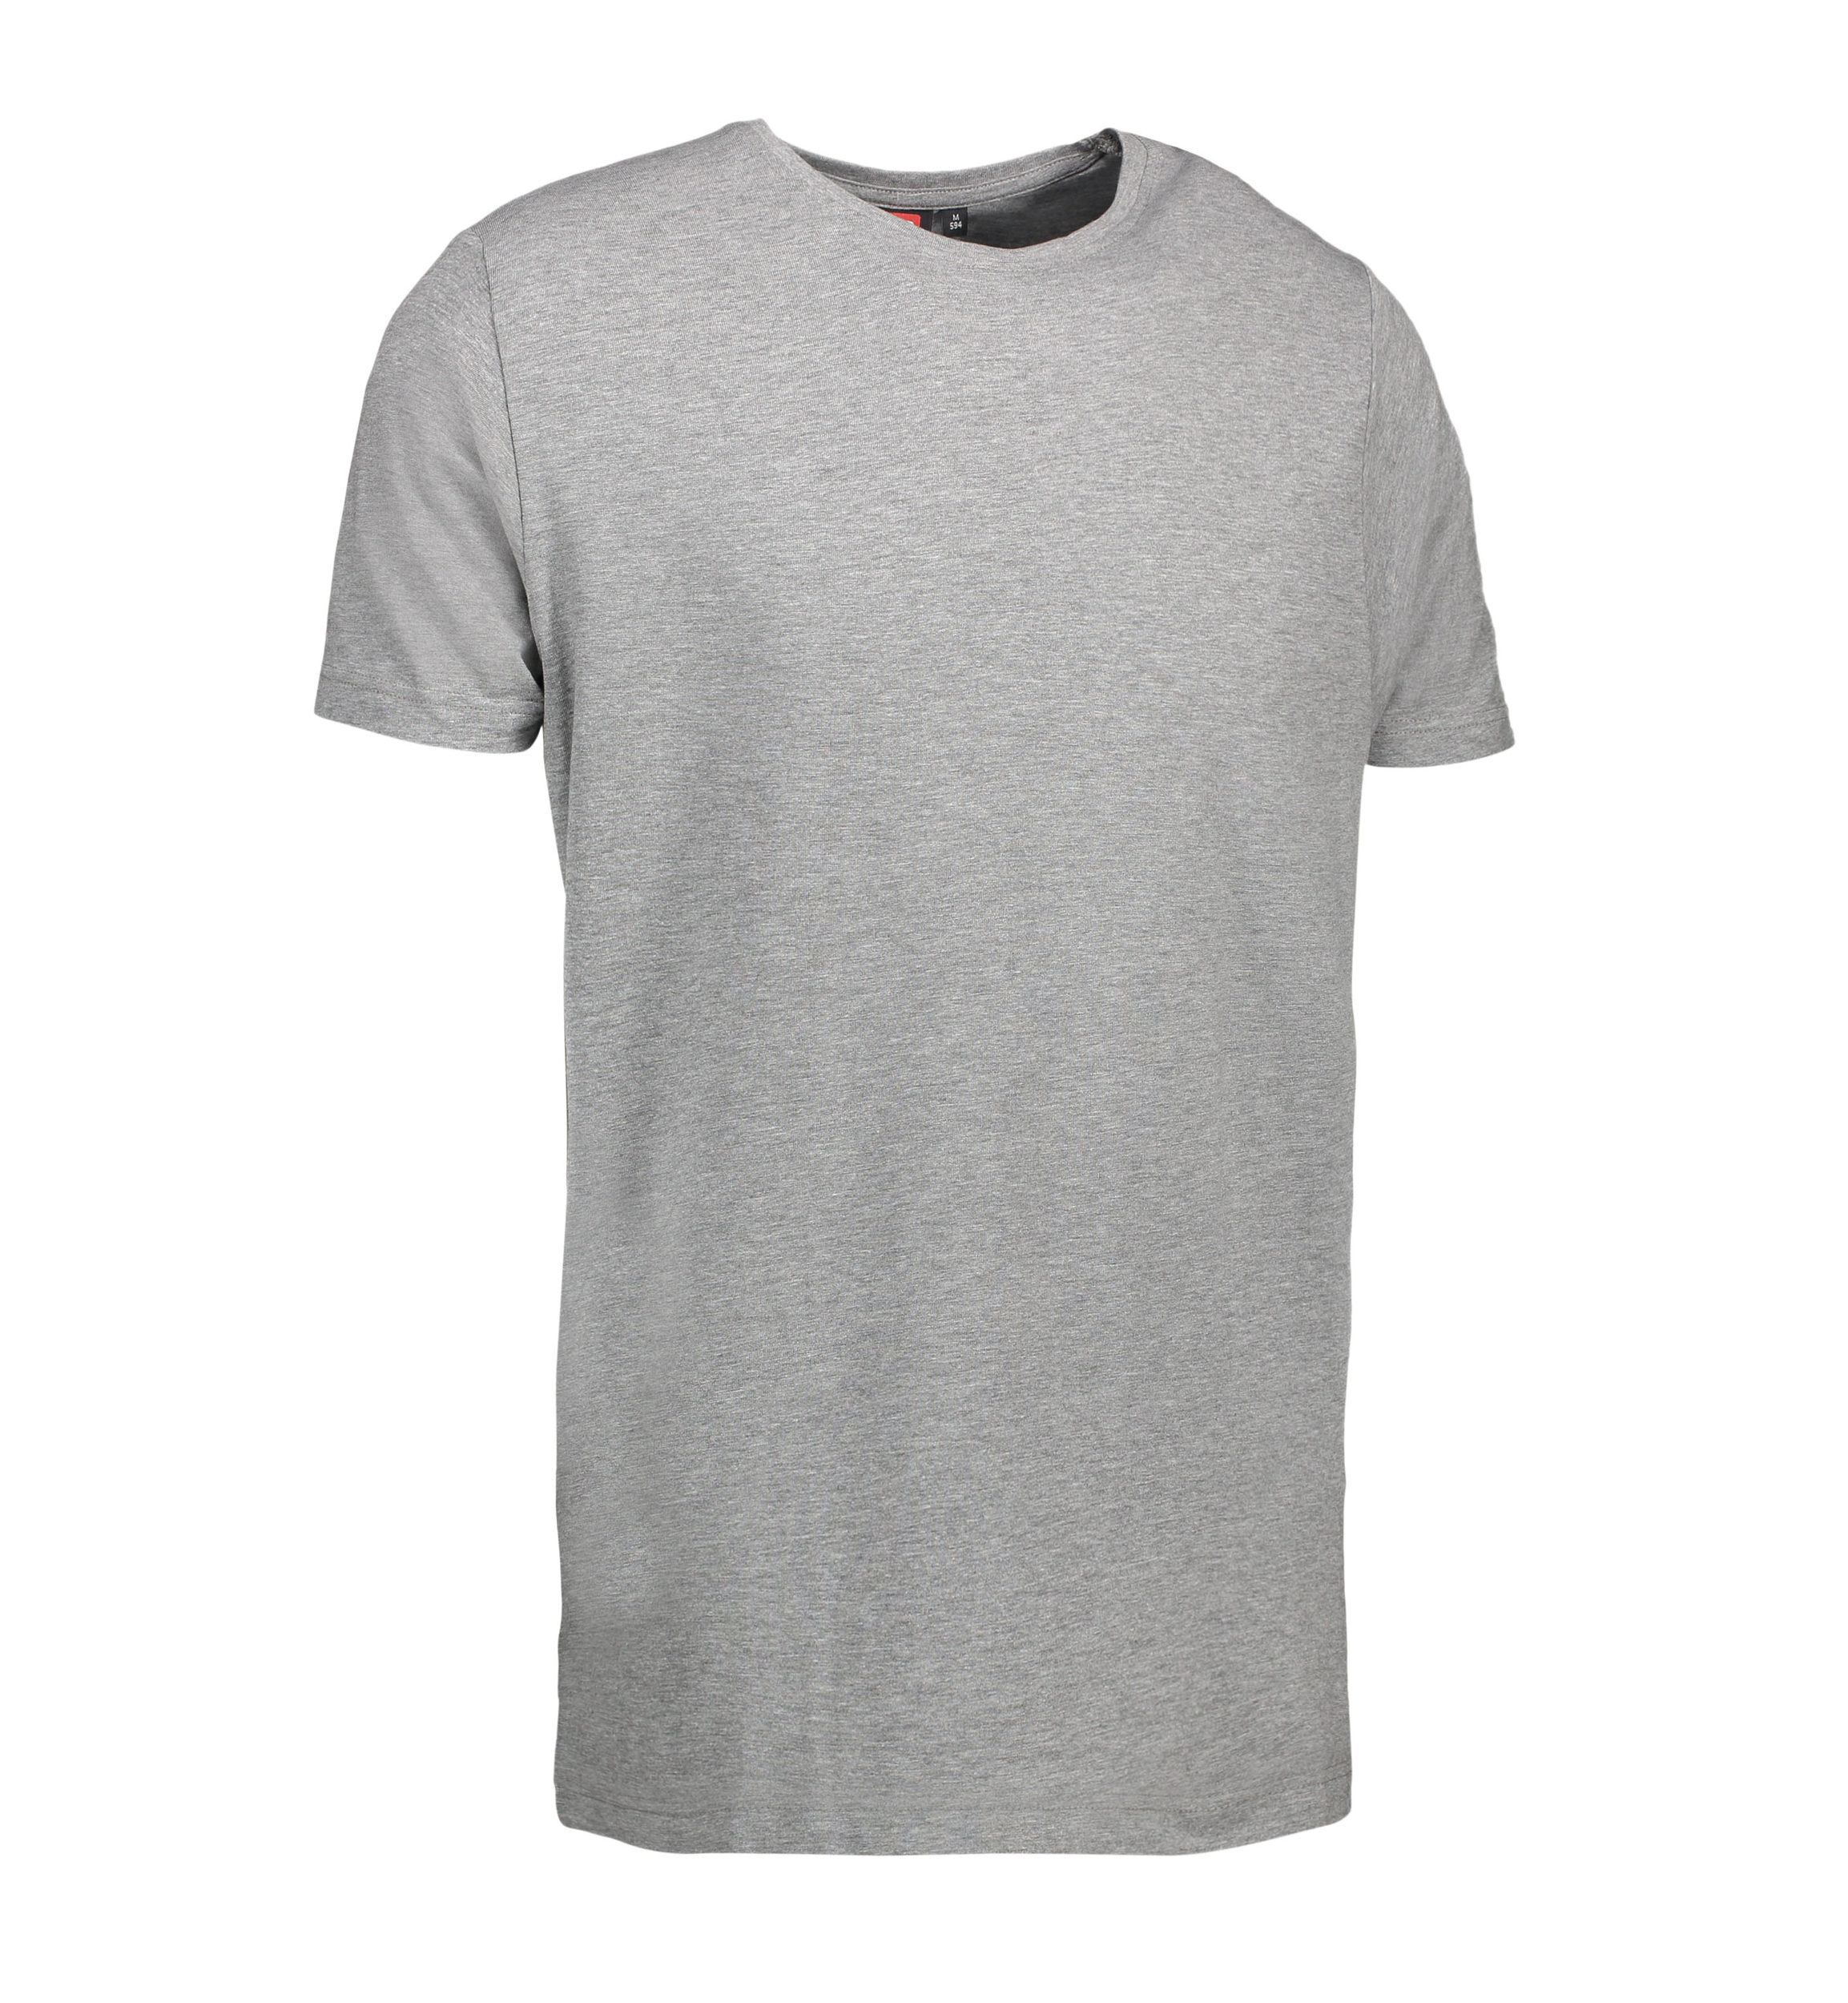 Billede af Stretch t-shirt til mænd i grå - S hos Sygeplejebutikken.dk